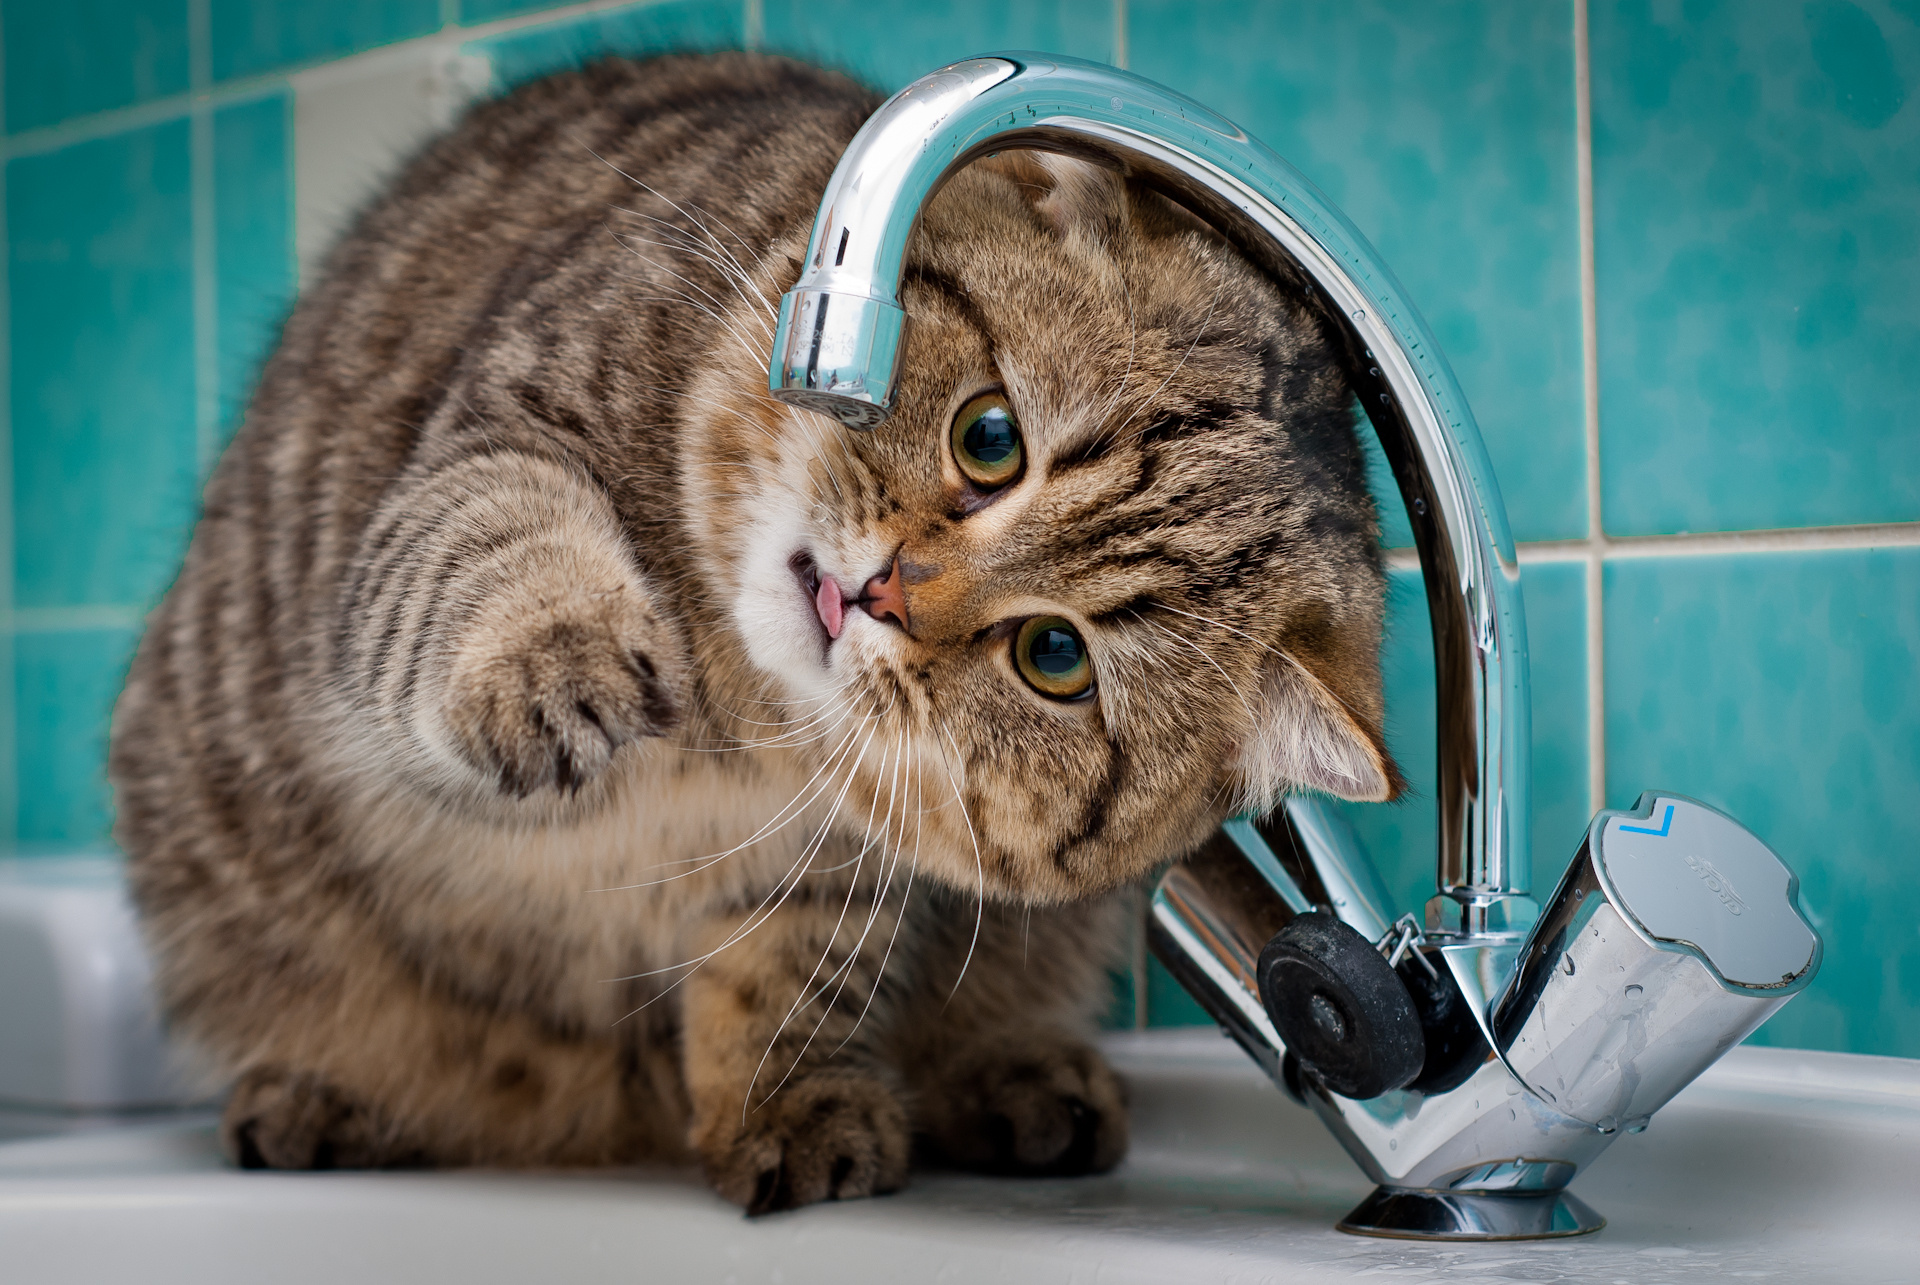 Хочу холодную воду. Нет воды. Кот пьет воду из под крана. Кот и кран с водой. Кот возле раковины.